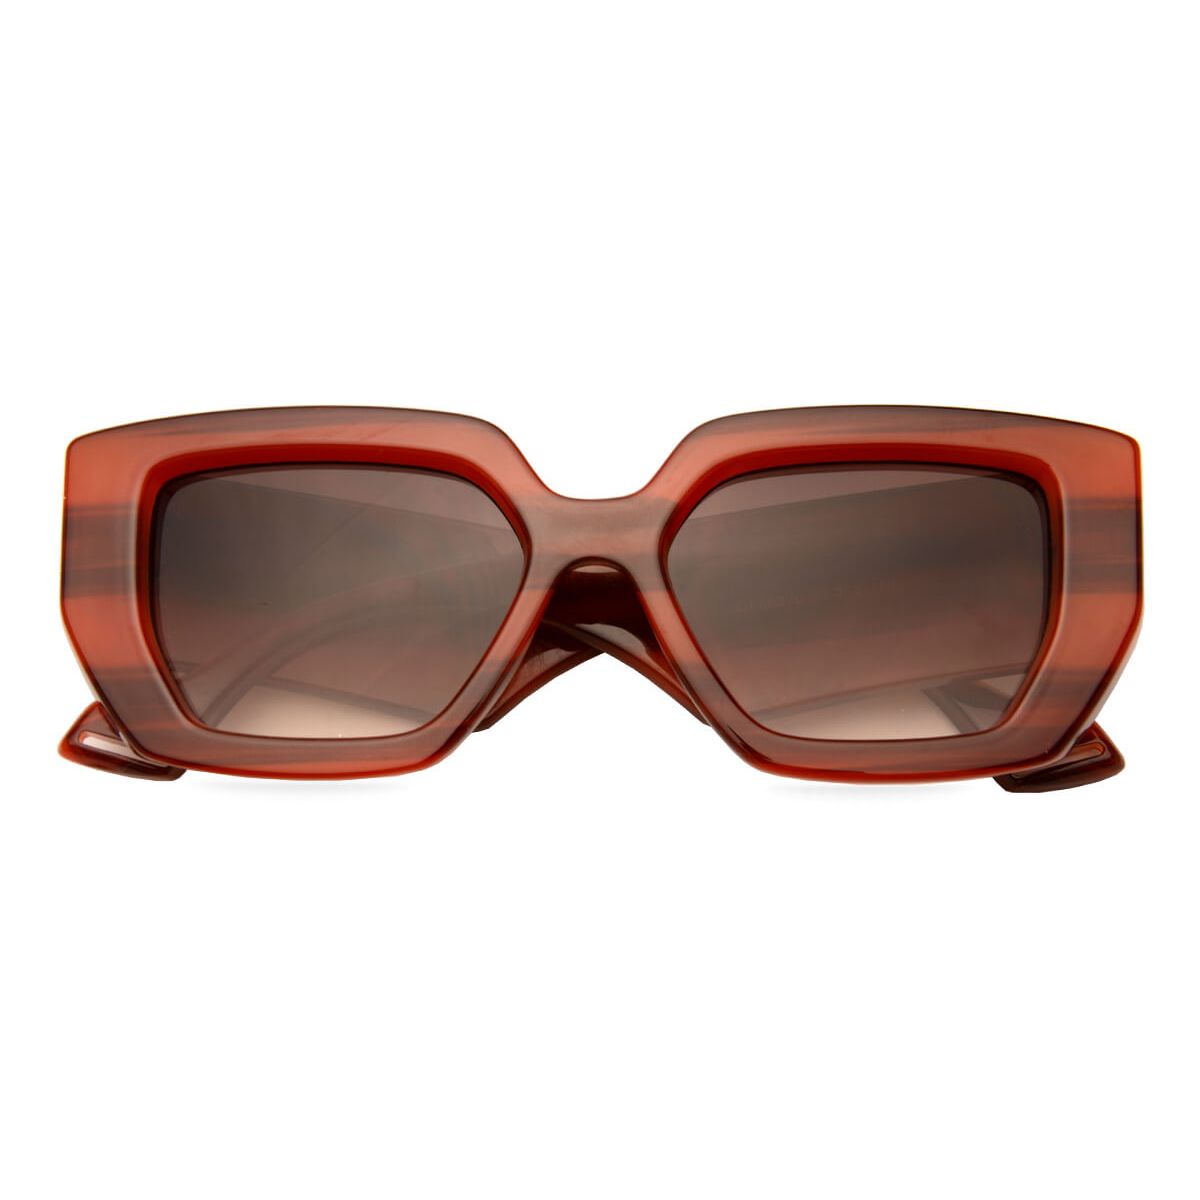 86320 Rectangle Striped Eyeglasses Frames | Leoptique